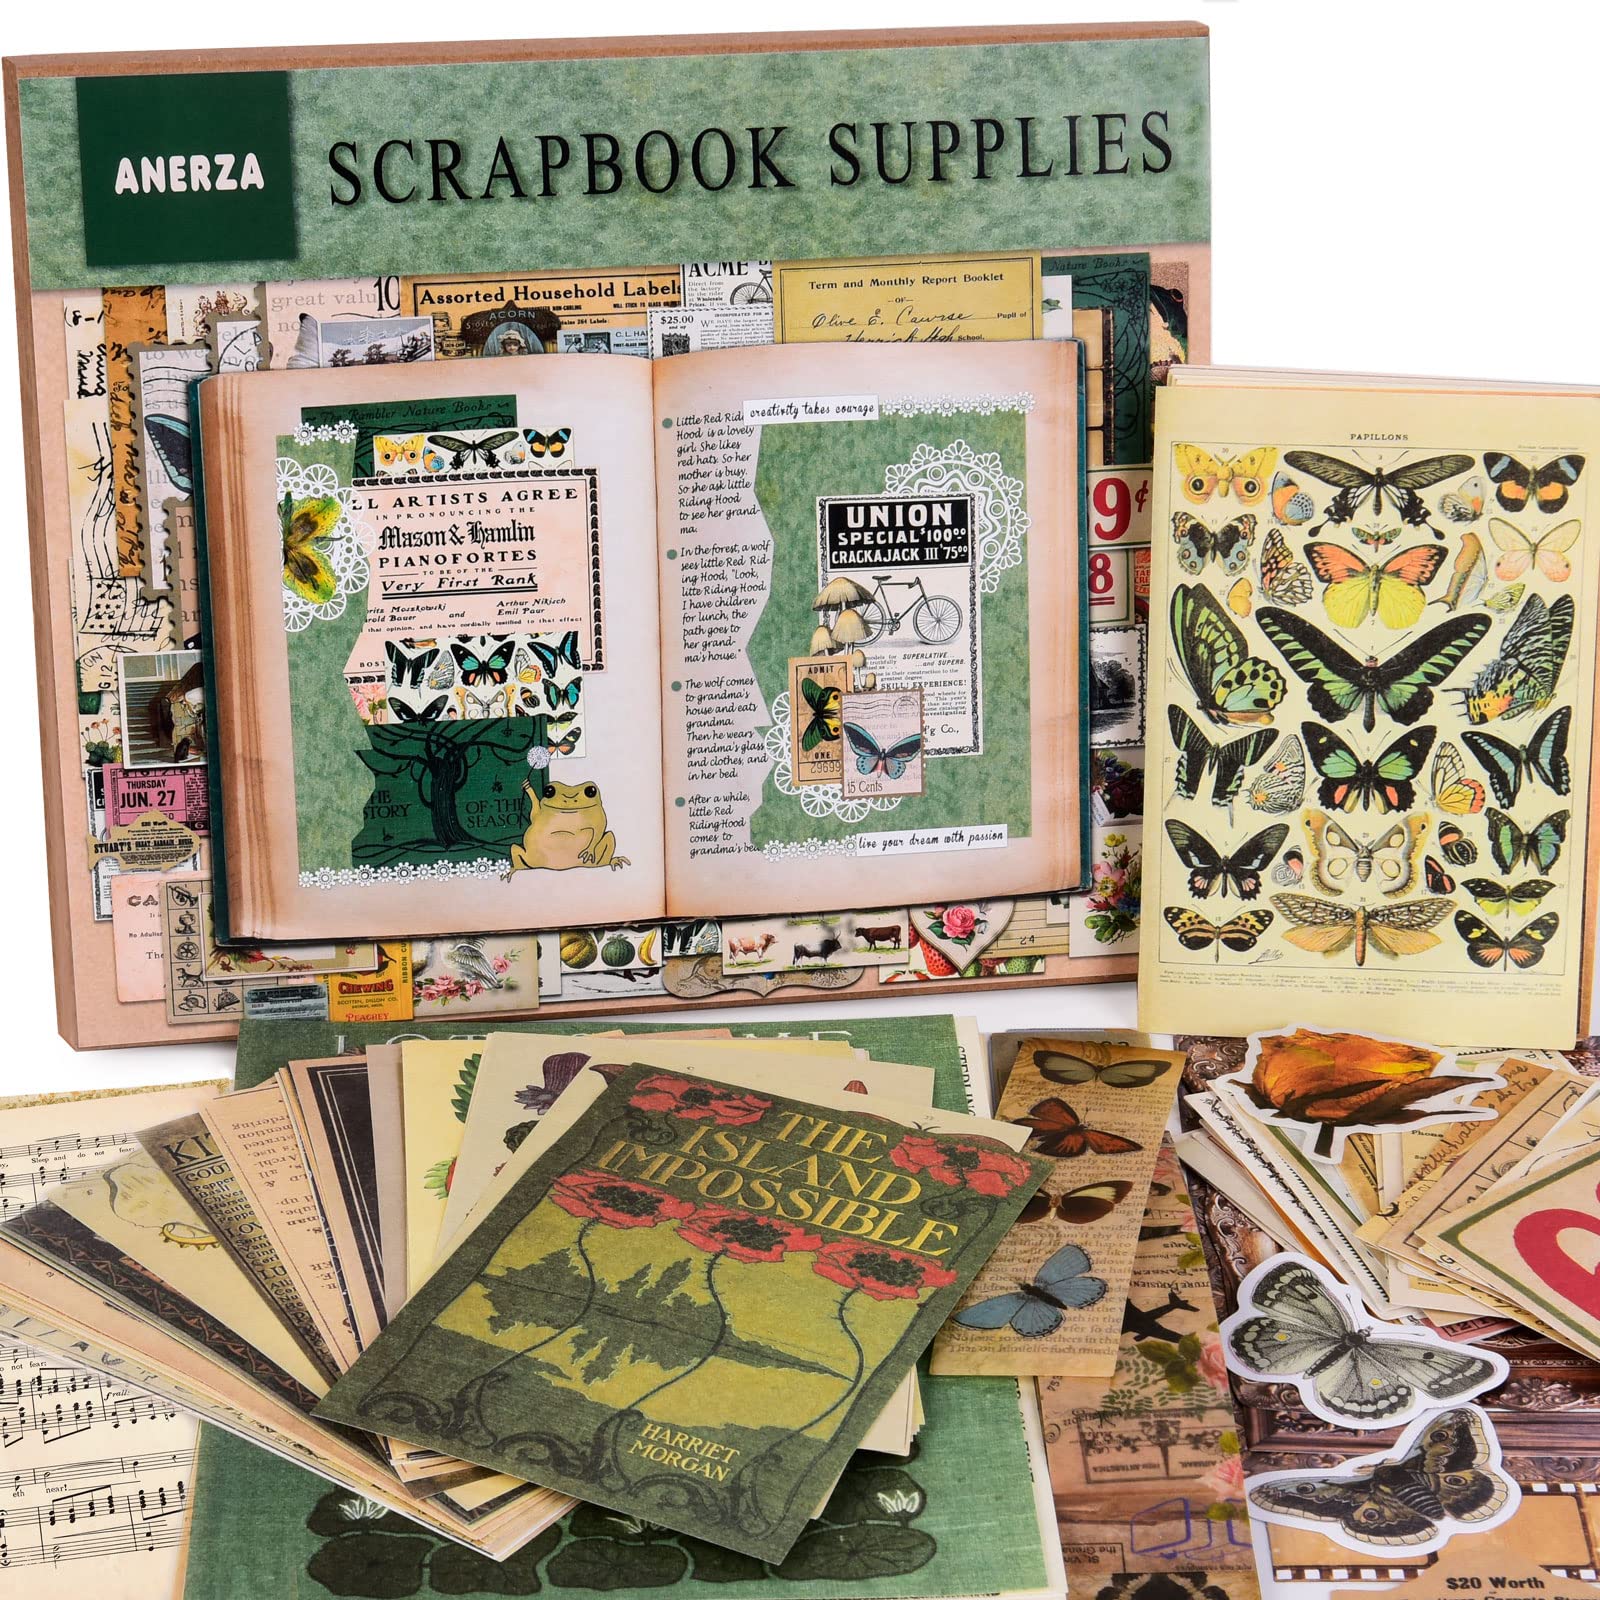 Top 5 Best Scrapbooking Kits & Supplies